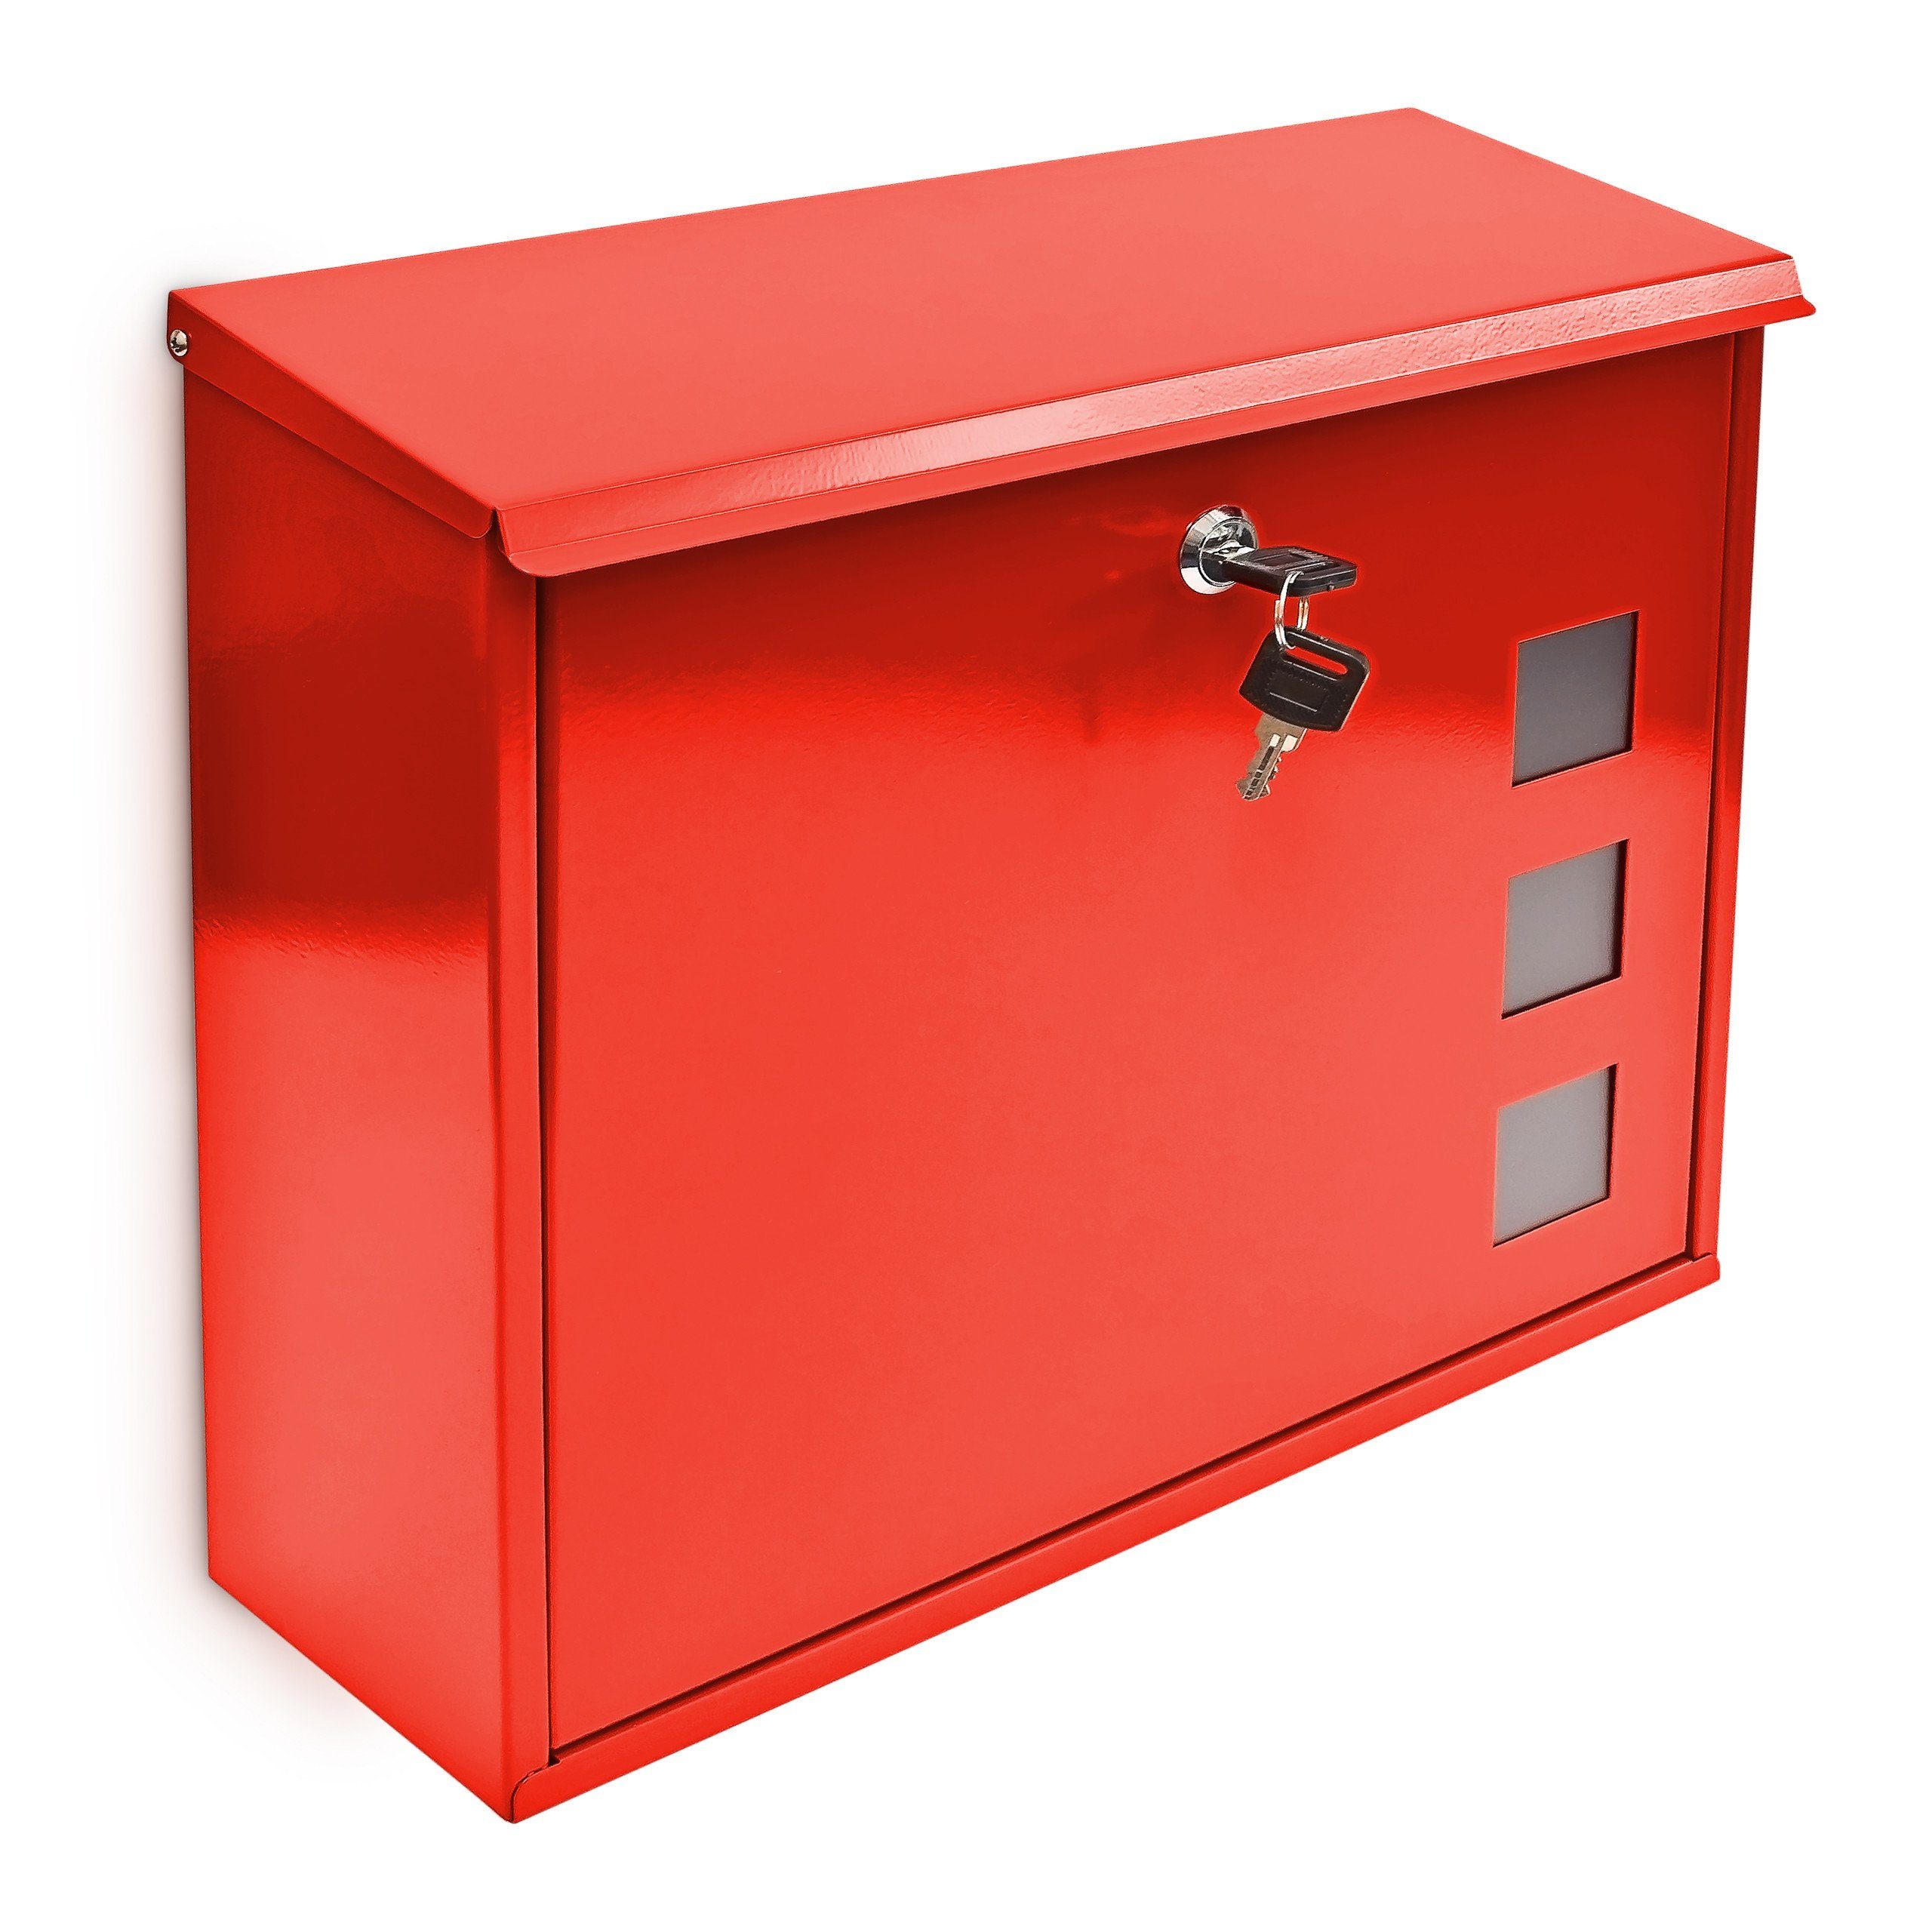 relaxdays Briefkasten Briefkasten Metall 3 Fenster Farbauswahl, Rot Rot Silber